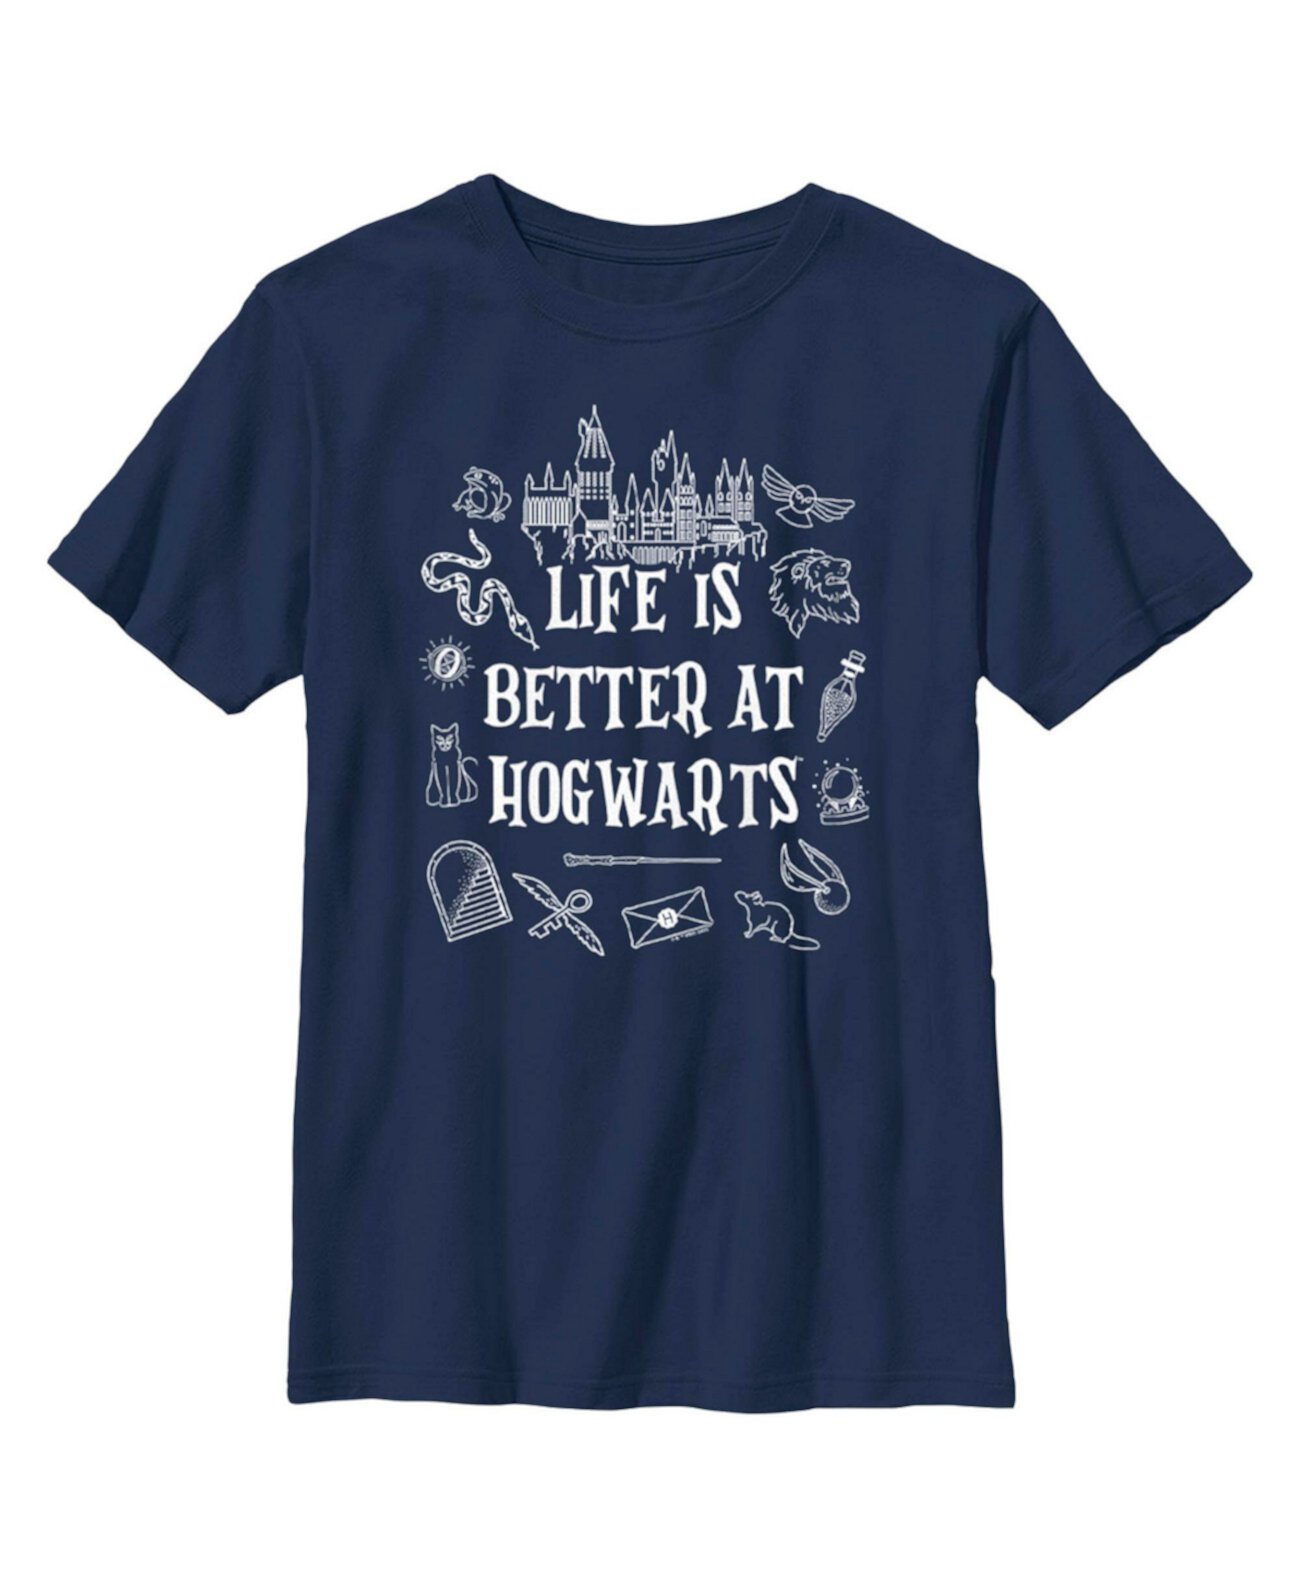 Детская футболка с изображением Гарри Поттера «Жизнь в Хогвартсе лучше» для мальчика Warner Bros.